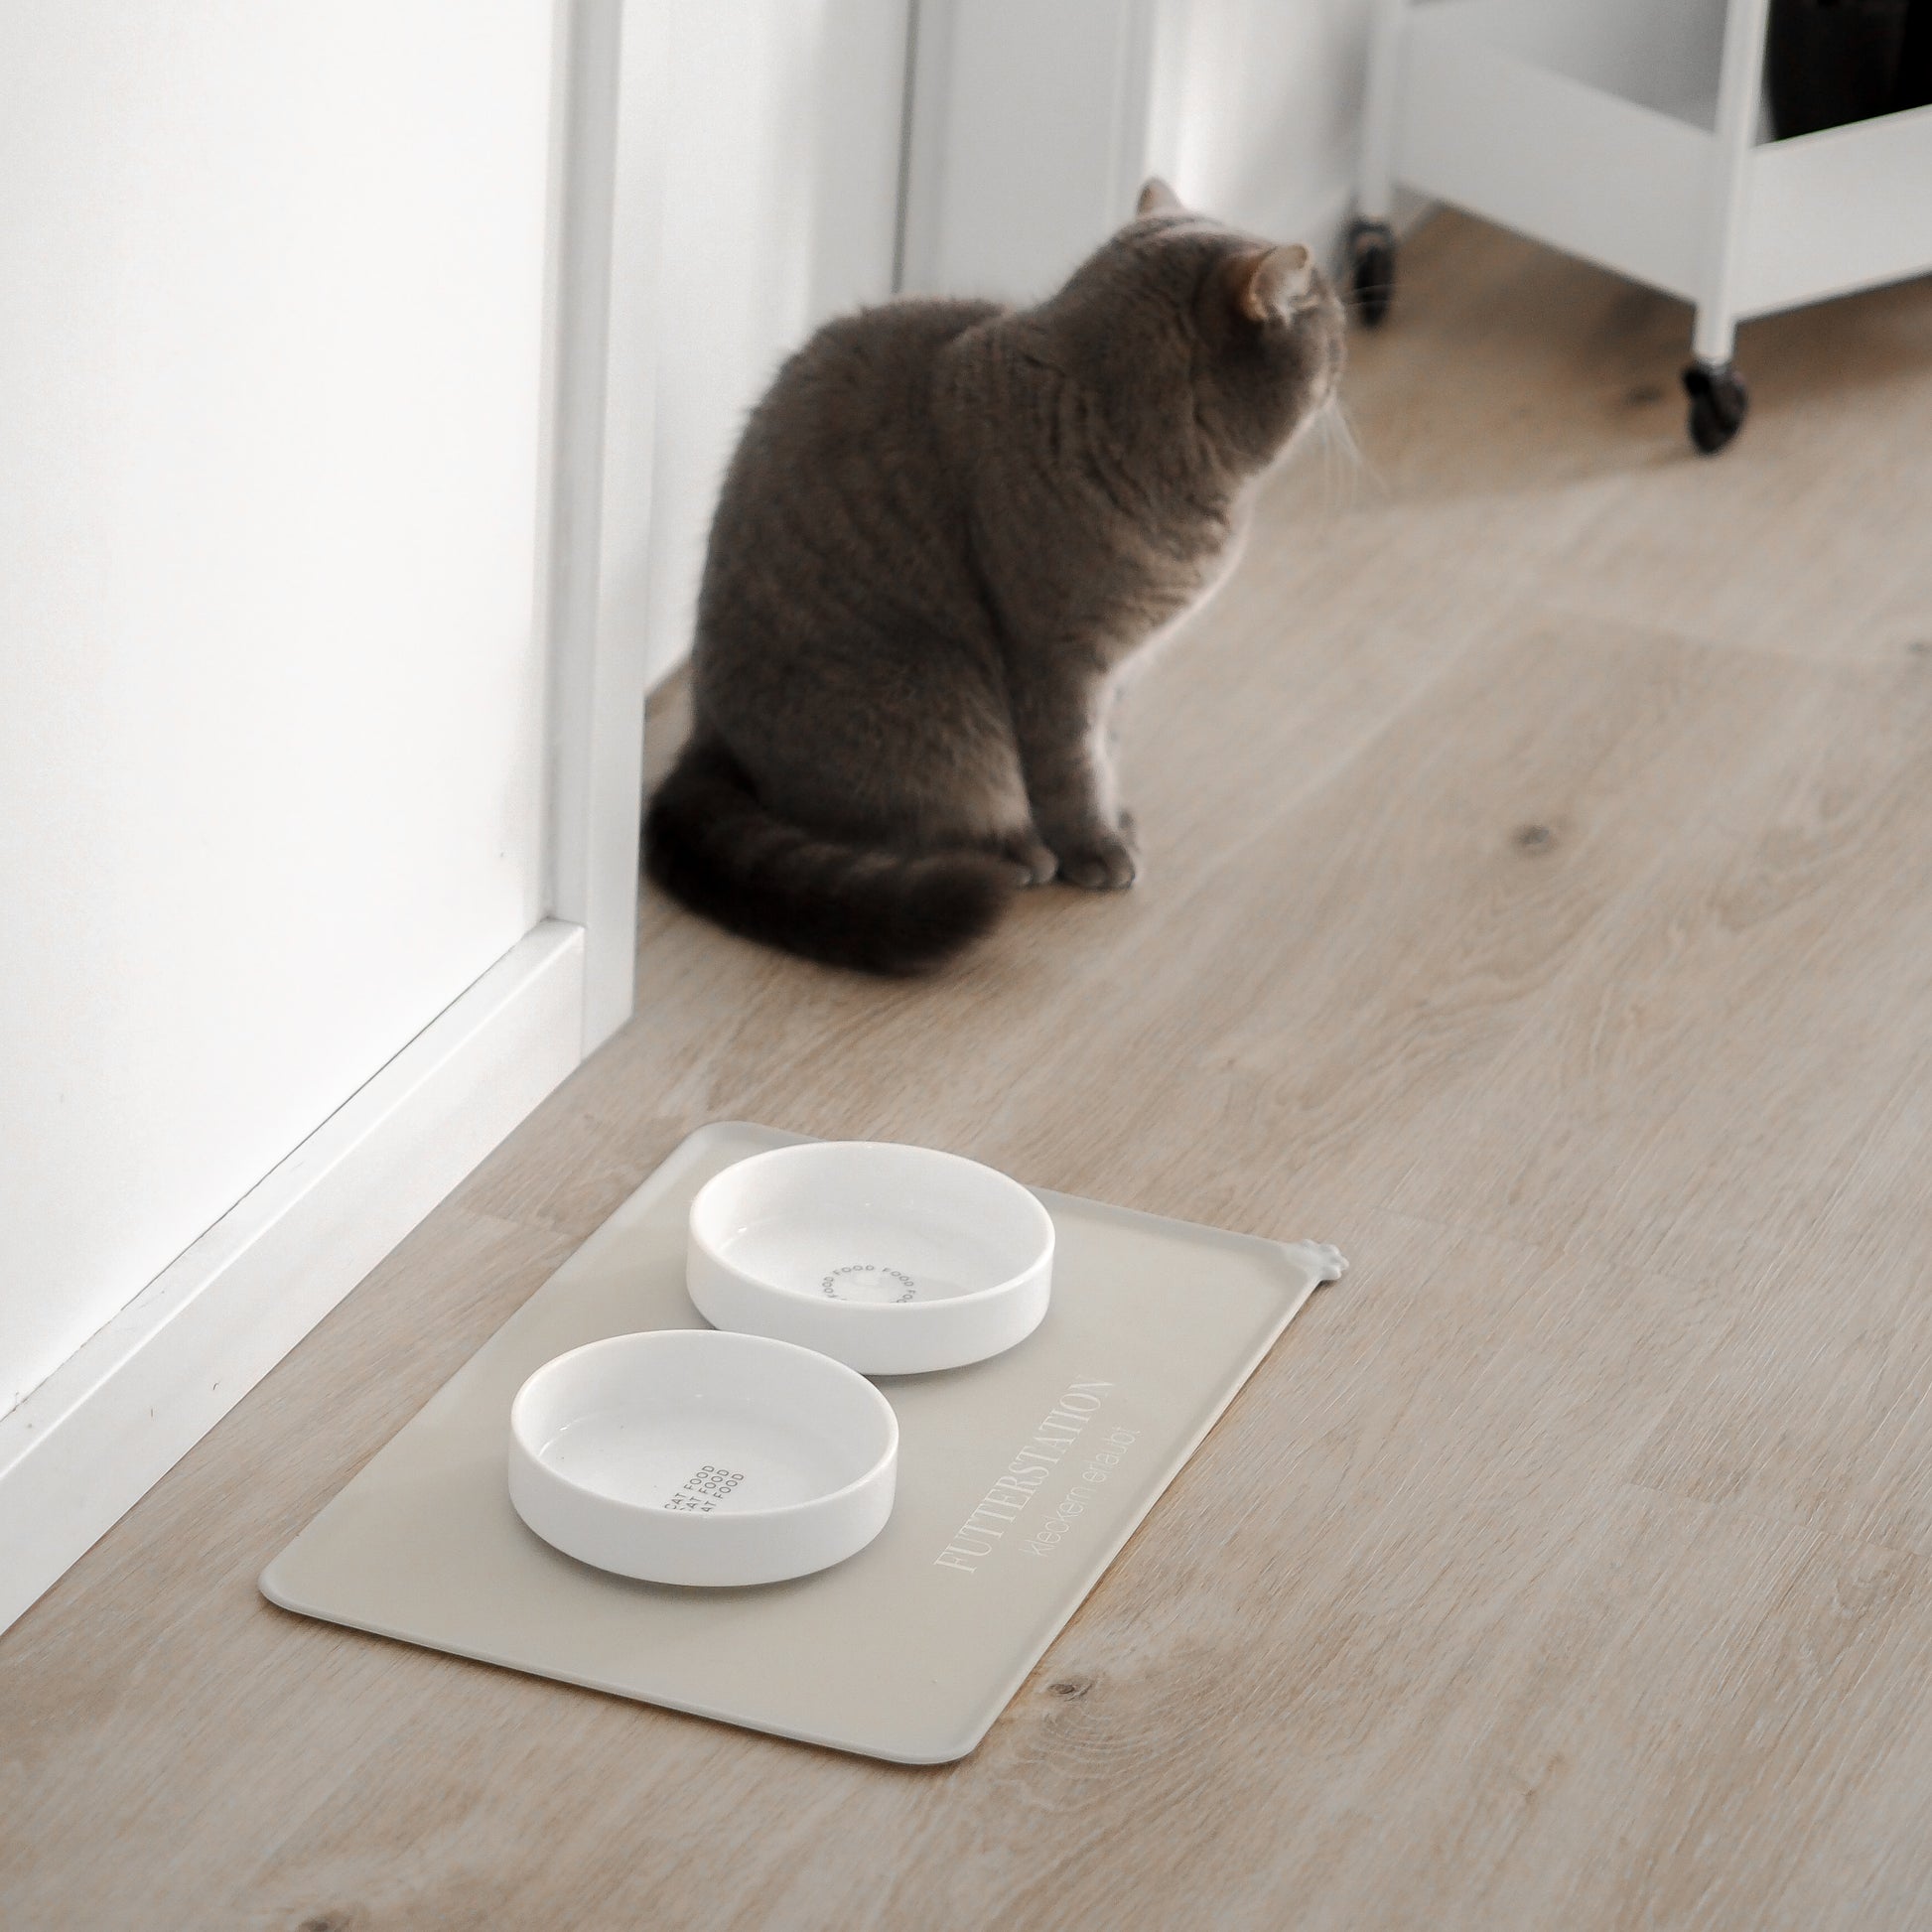 Artgerechter Futterplatz für Katzen bestehend aus einer beigen Napfunterlage und zwei flachen Näpfen aus Keramik.